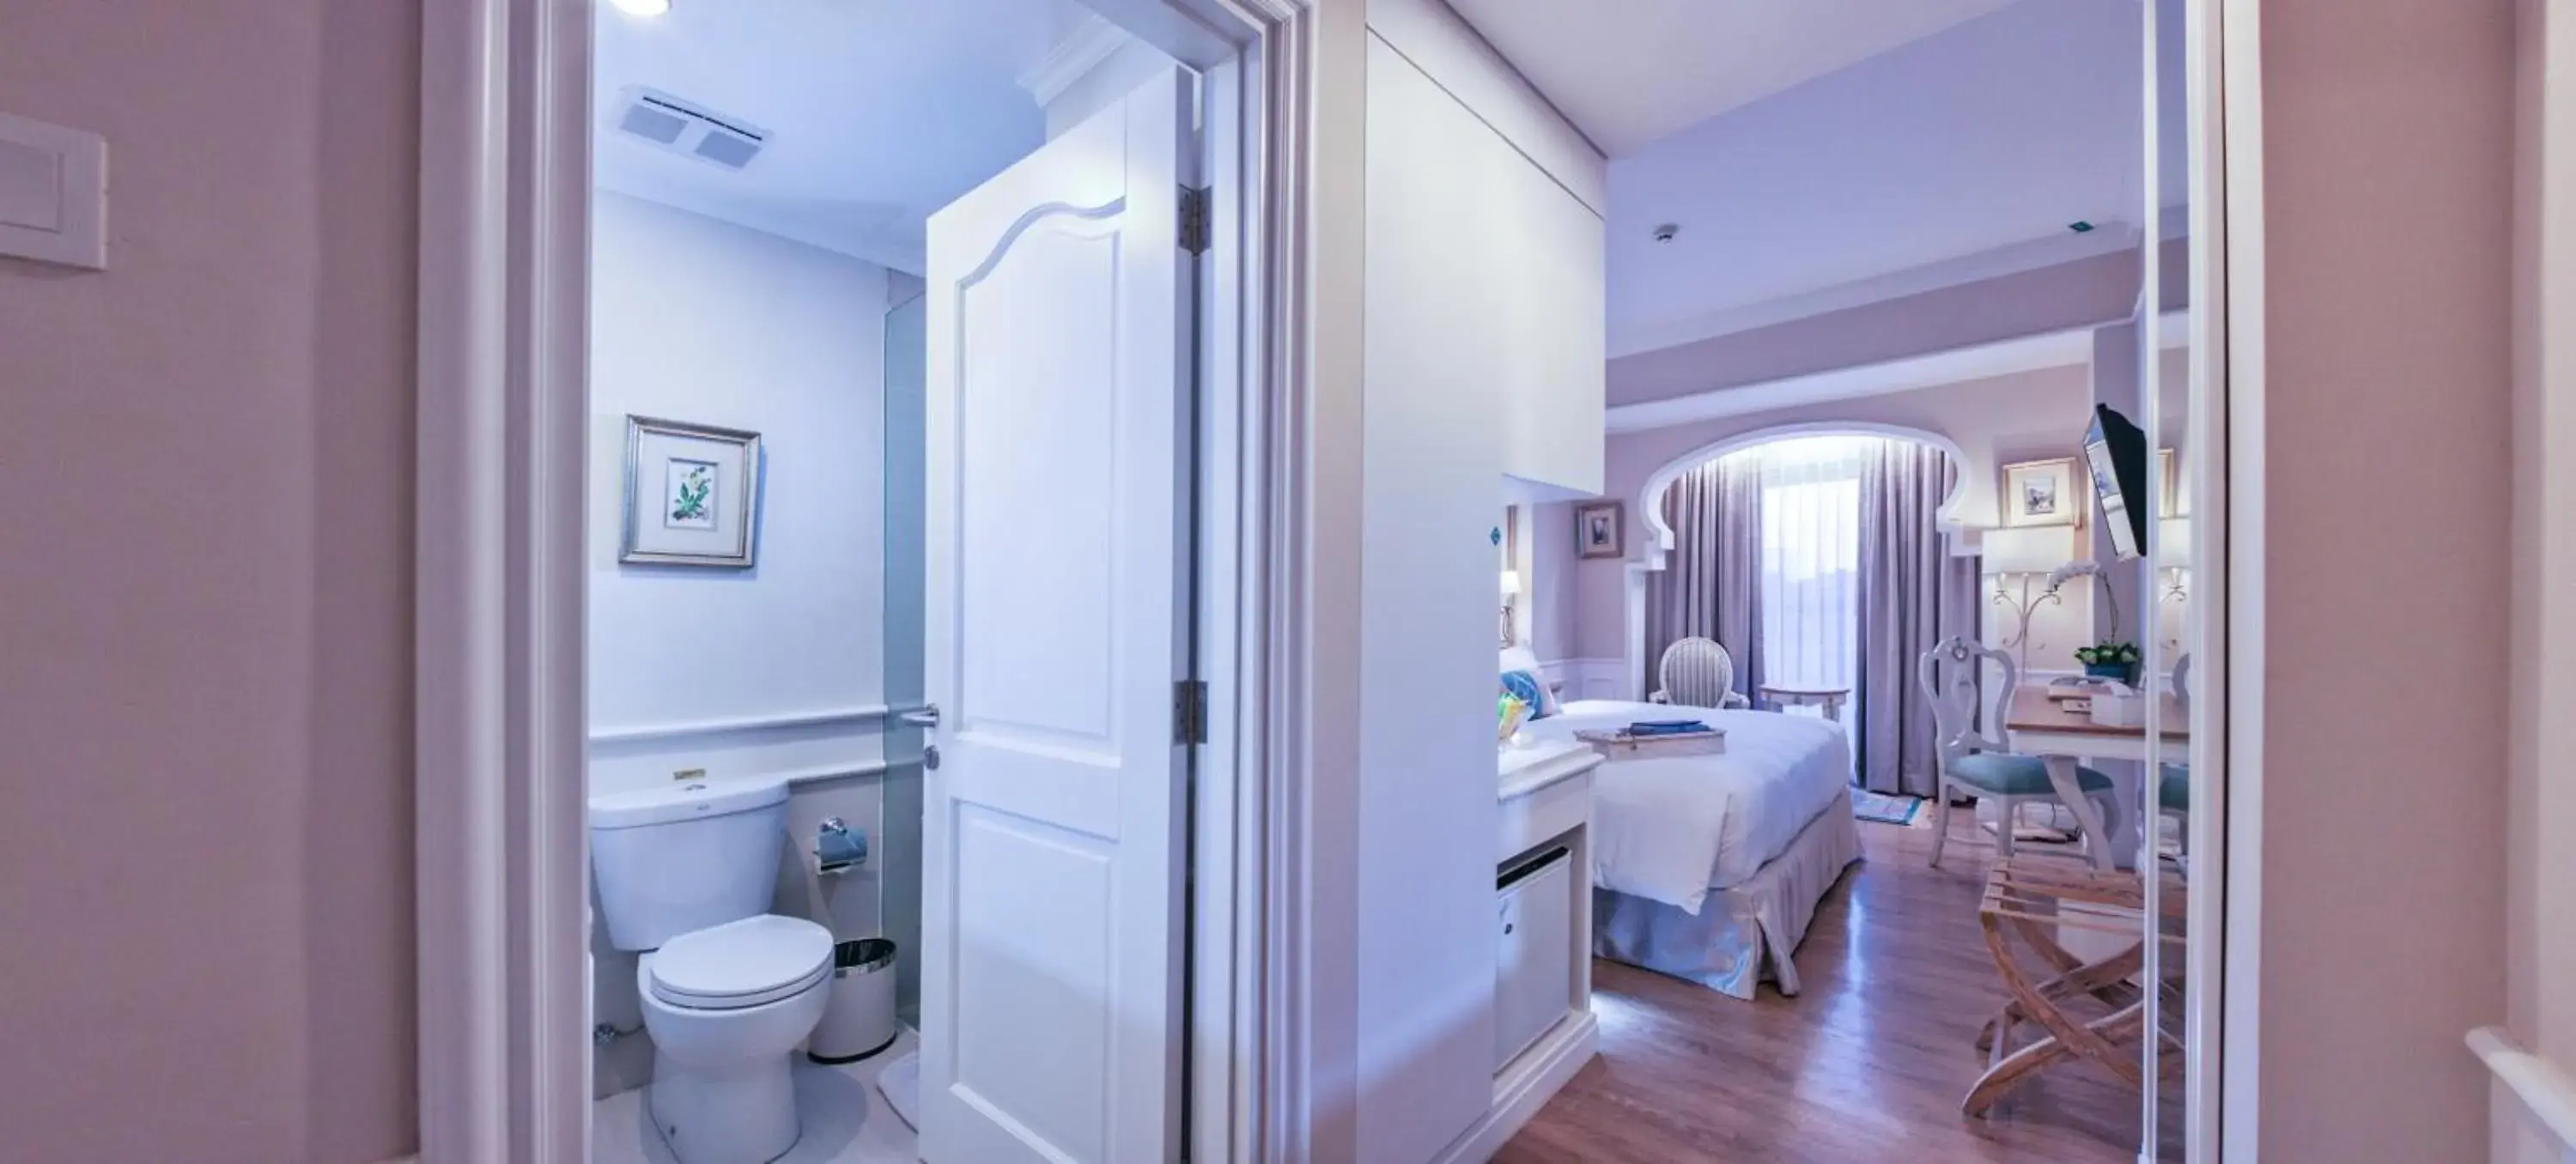 Bedroom, Bathroom in Noor Hotel